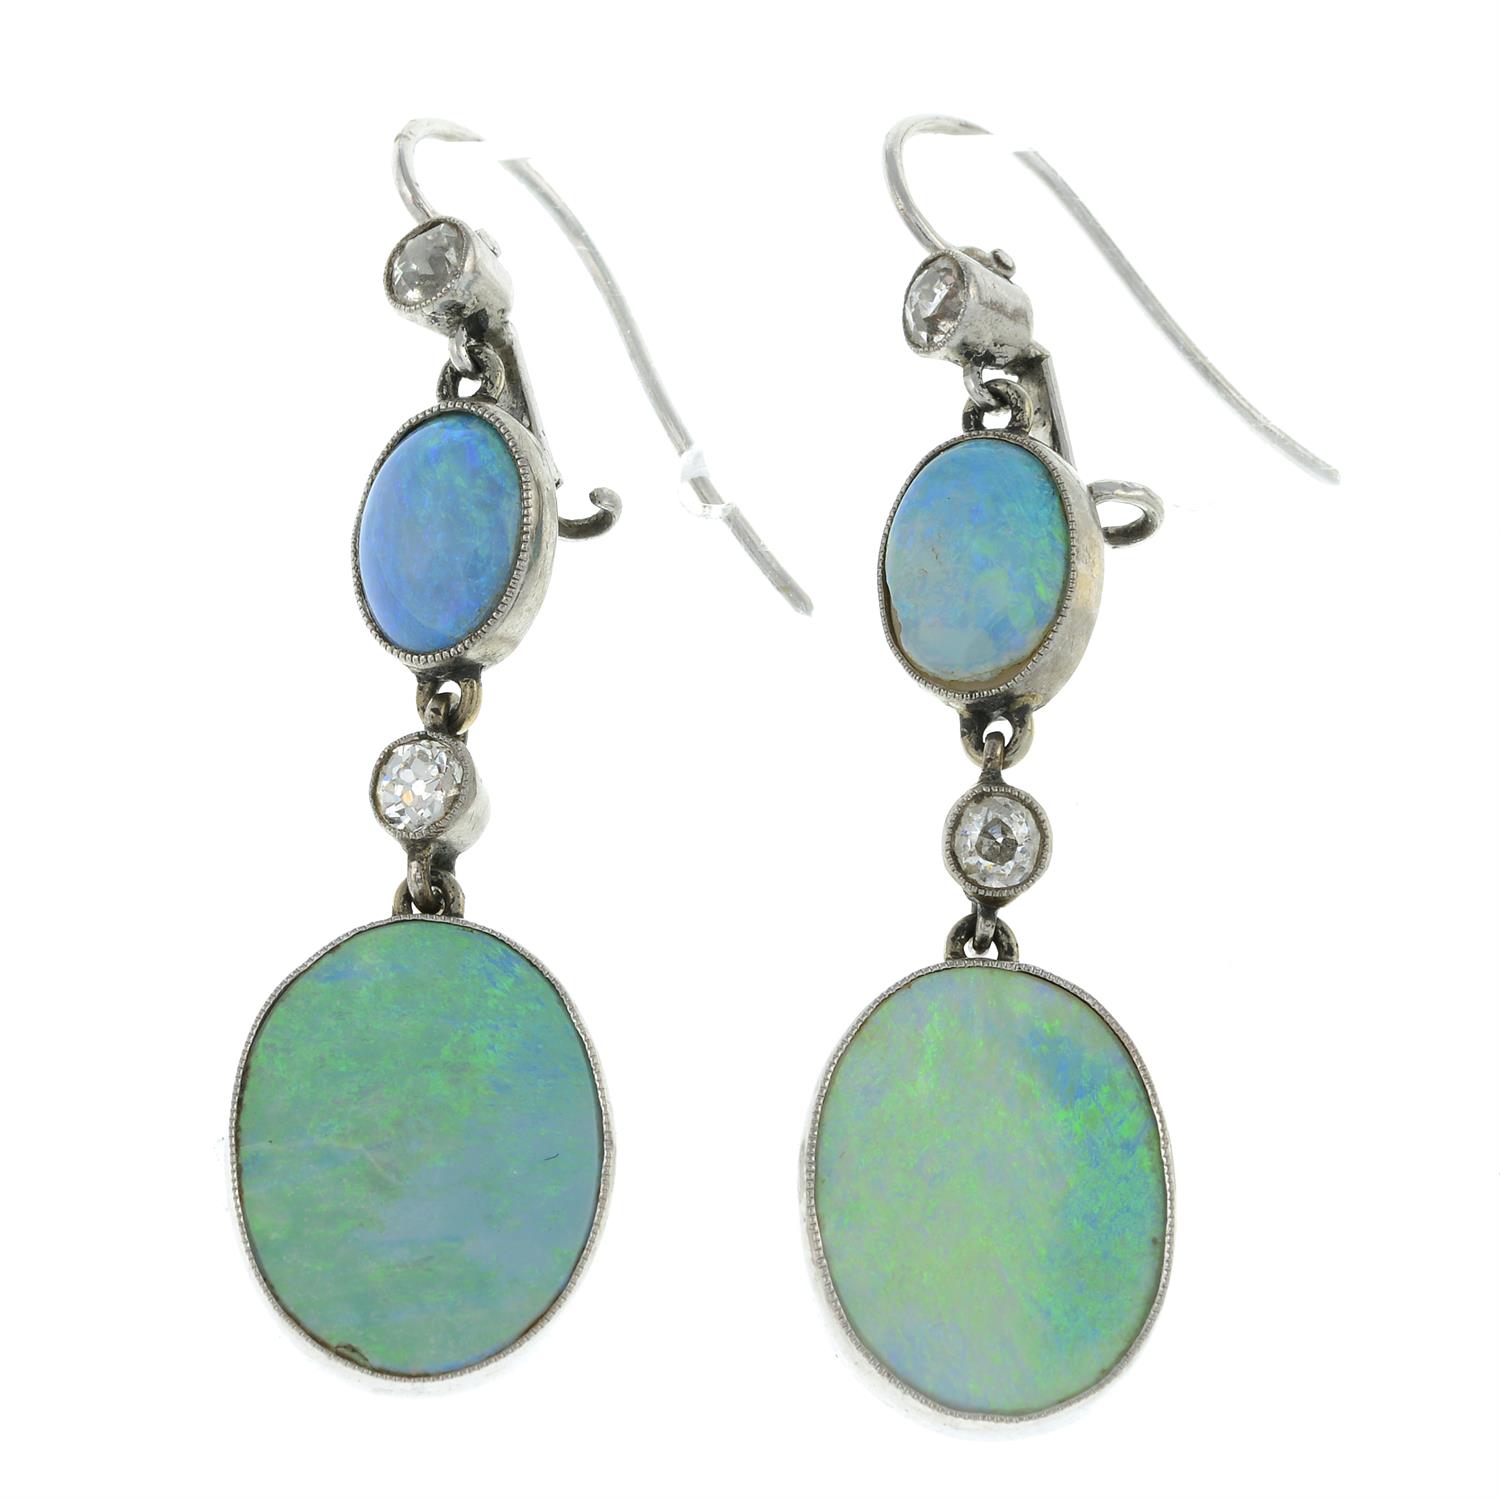 Opal doublet & diamond earrings.